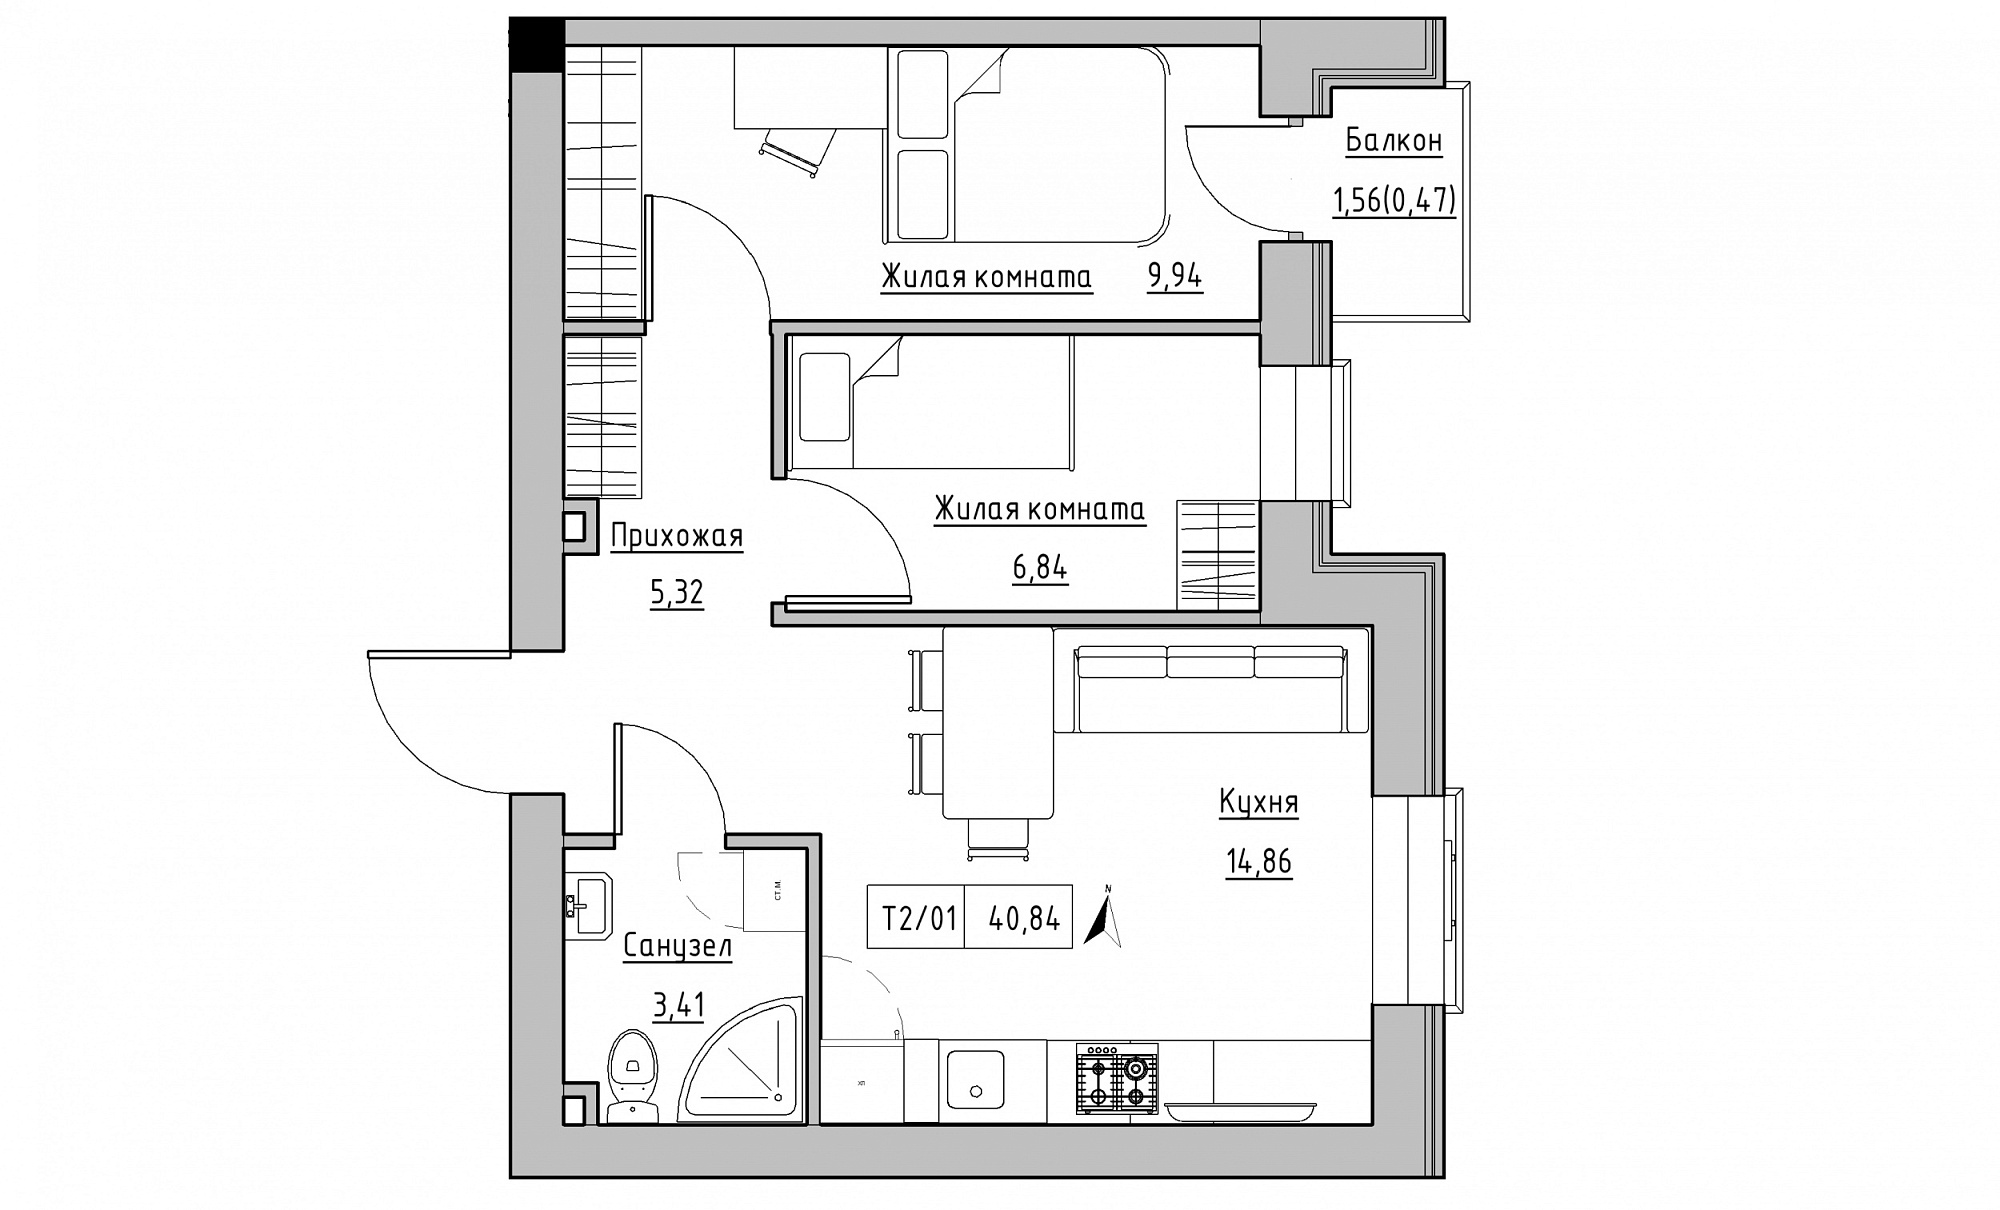 Планування 2-к квартира площею 40.84м2, KS-015-04/0006.